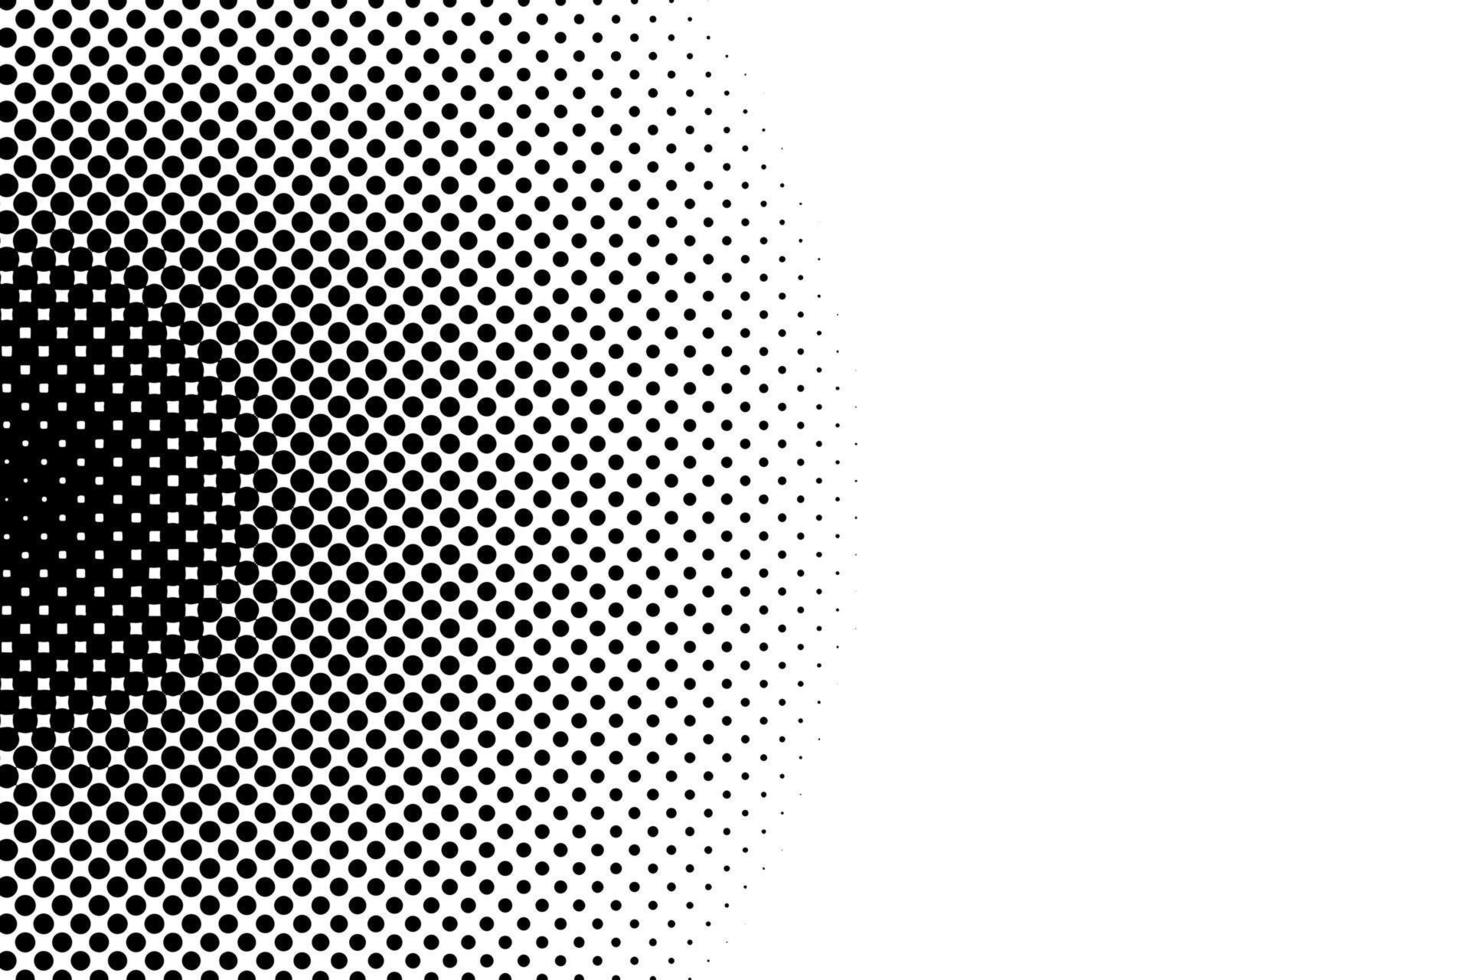 nero bianca pop arte sfondo con mezzitoni puntini nel retrò comico stile. vettore illustrazione.